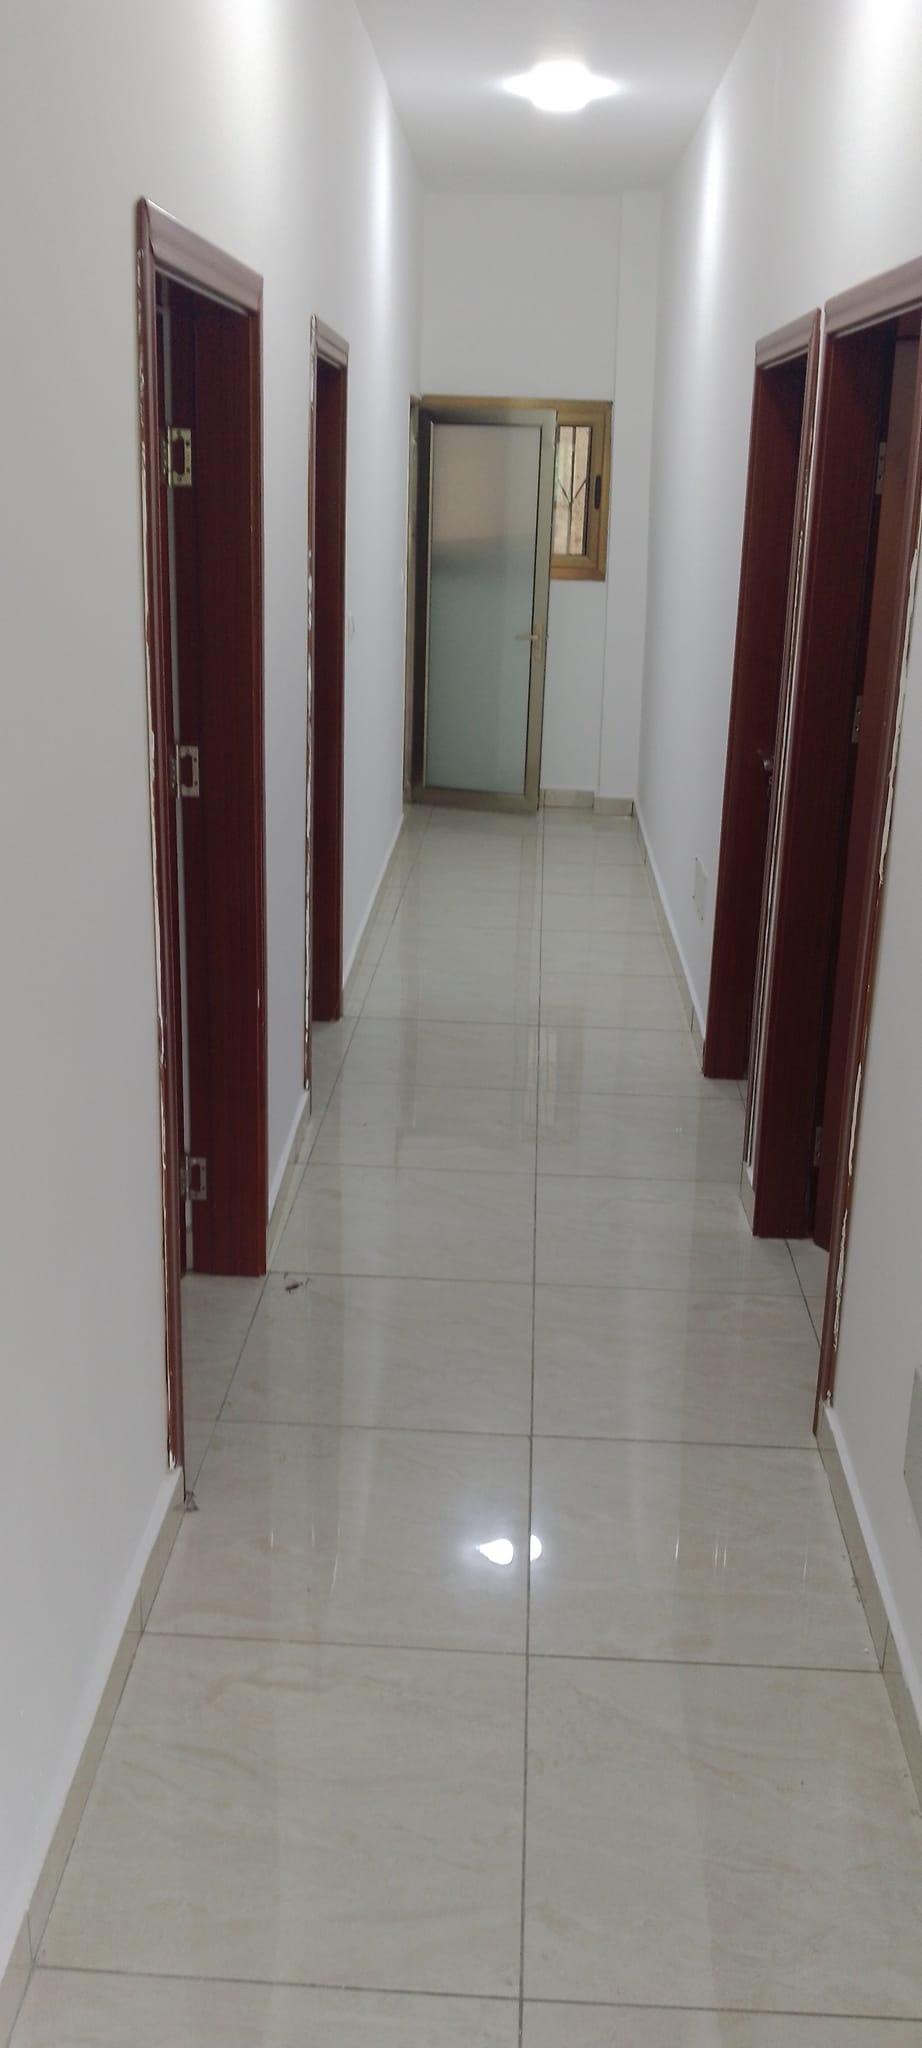 Location d'un Appartement : Abidjan-Cocody-2 Plateaux (2 plateaux)